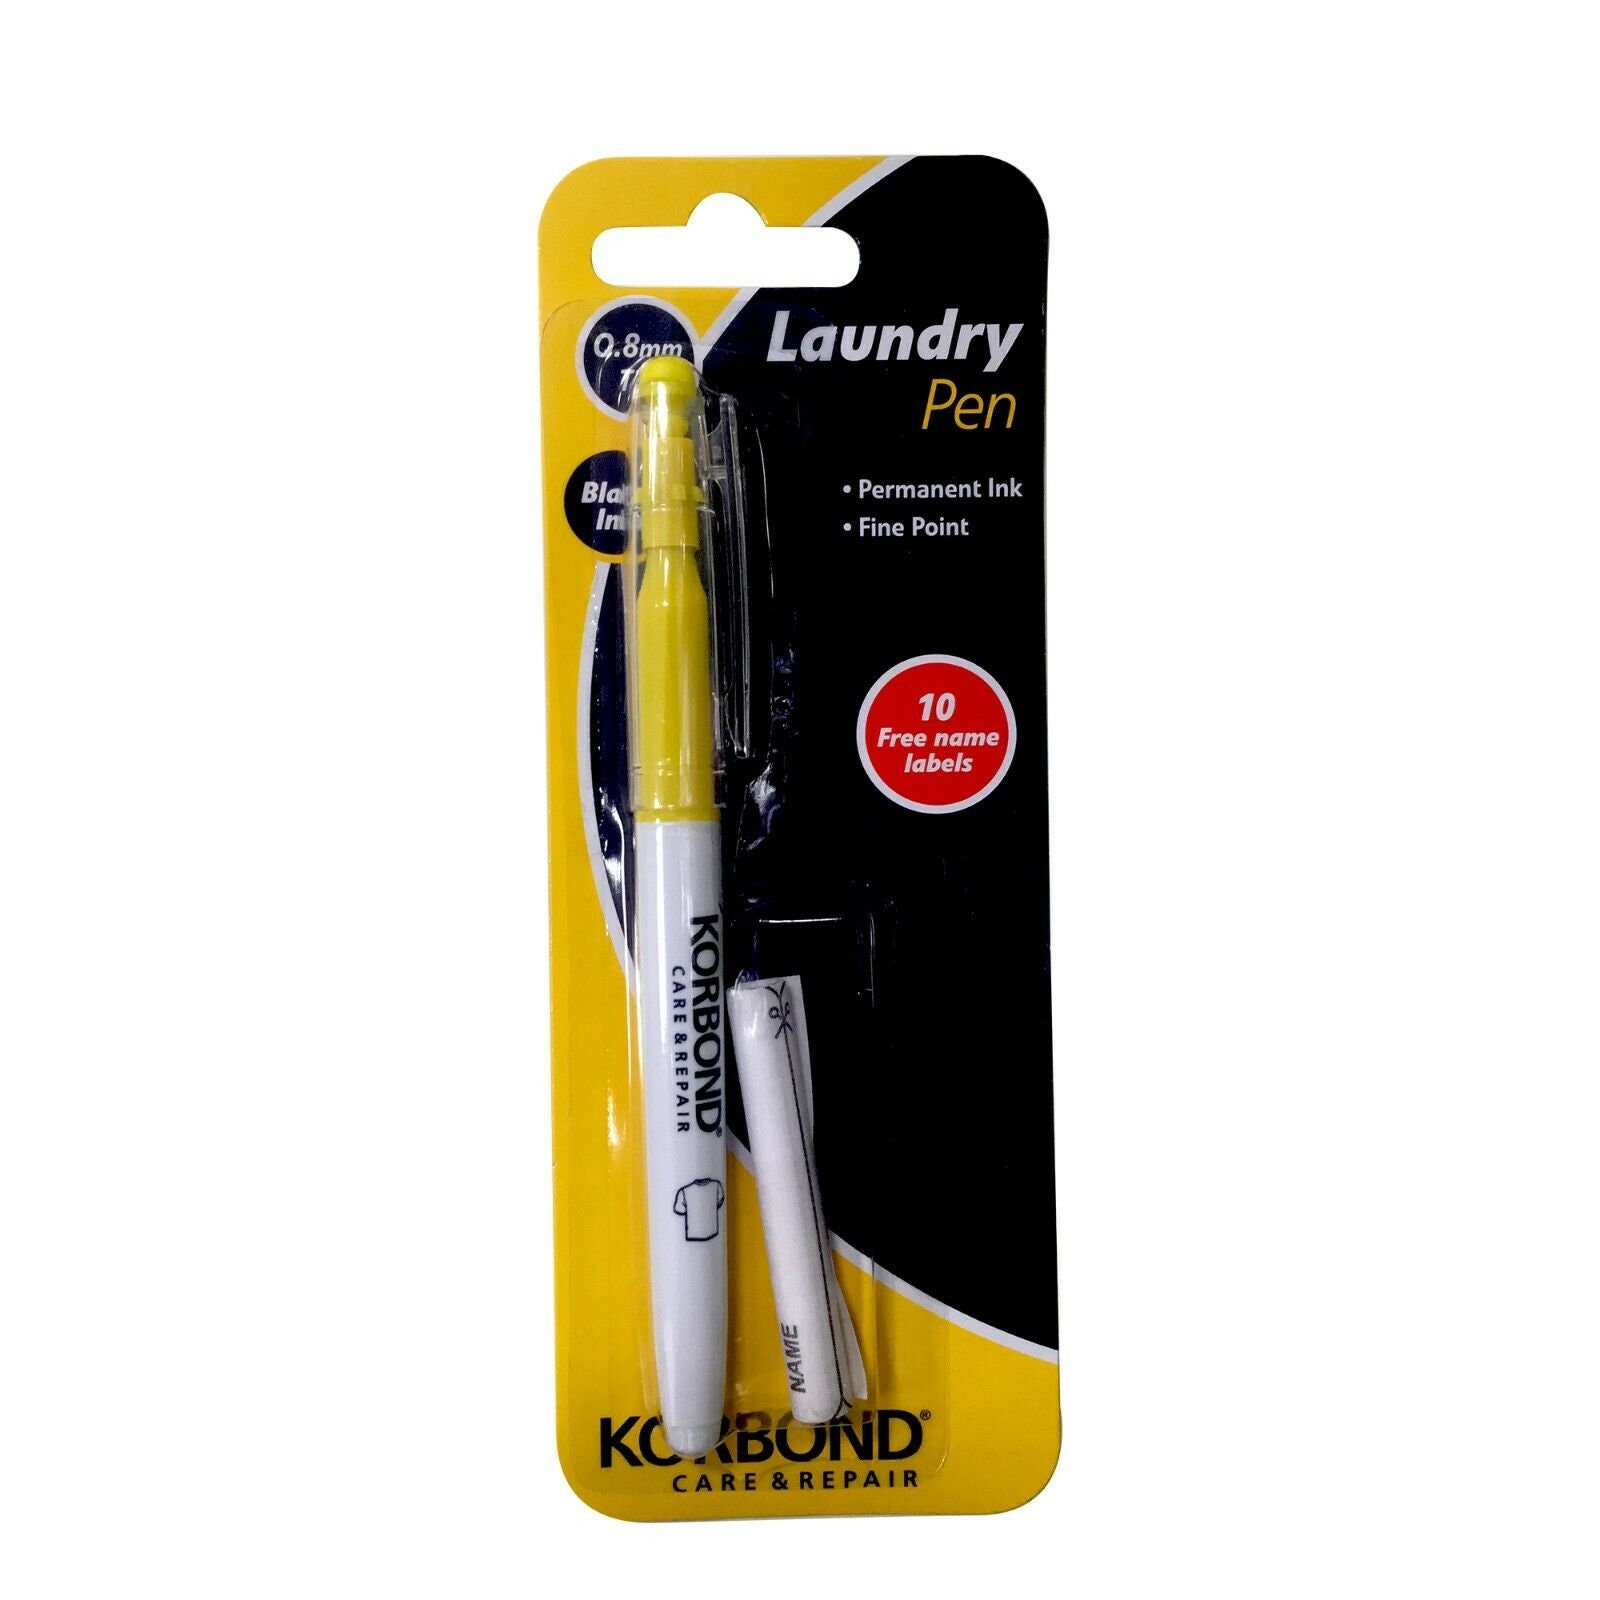 Laundry Pen & Label Set 